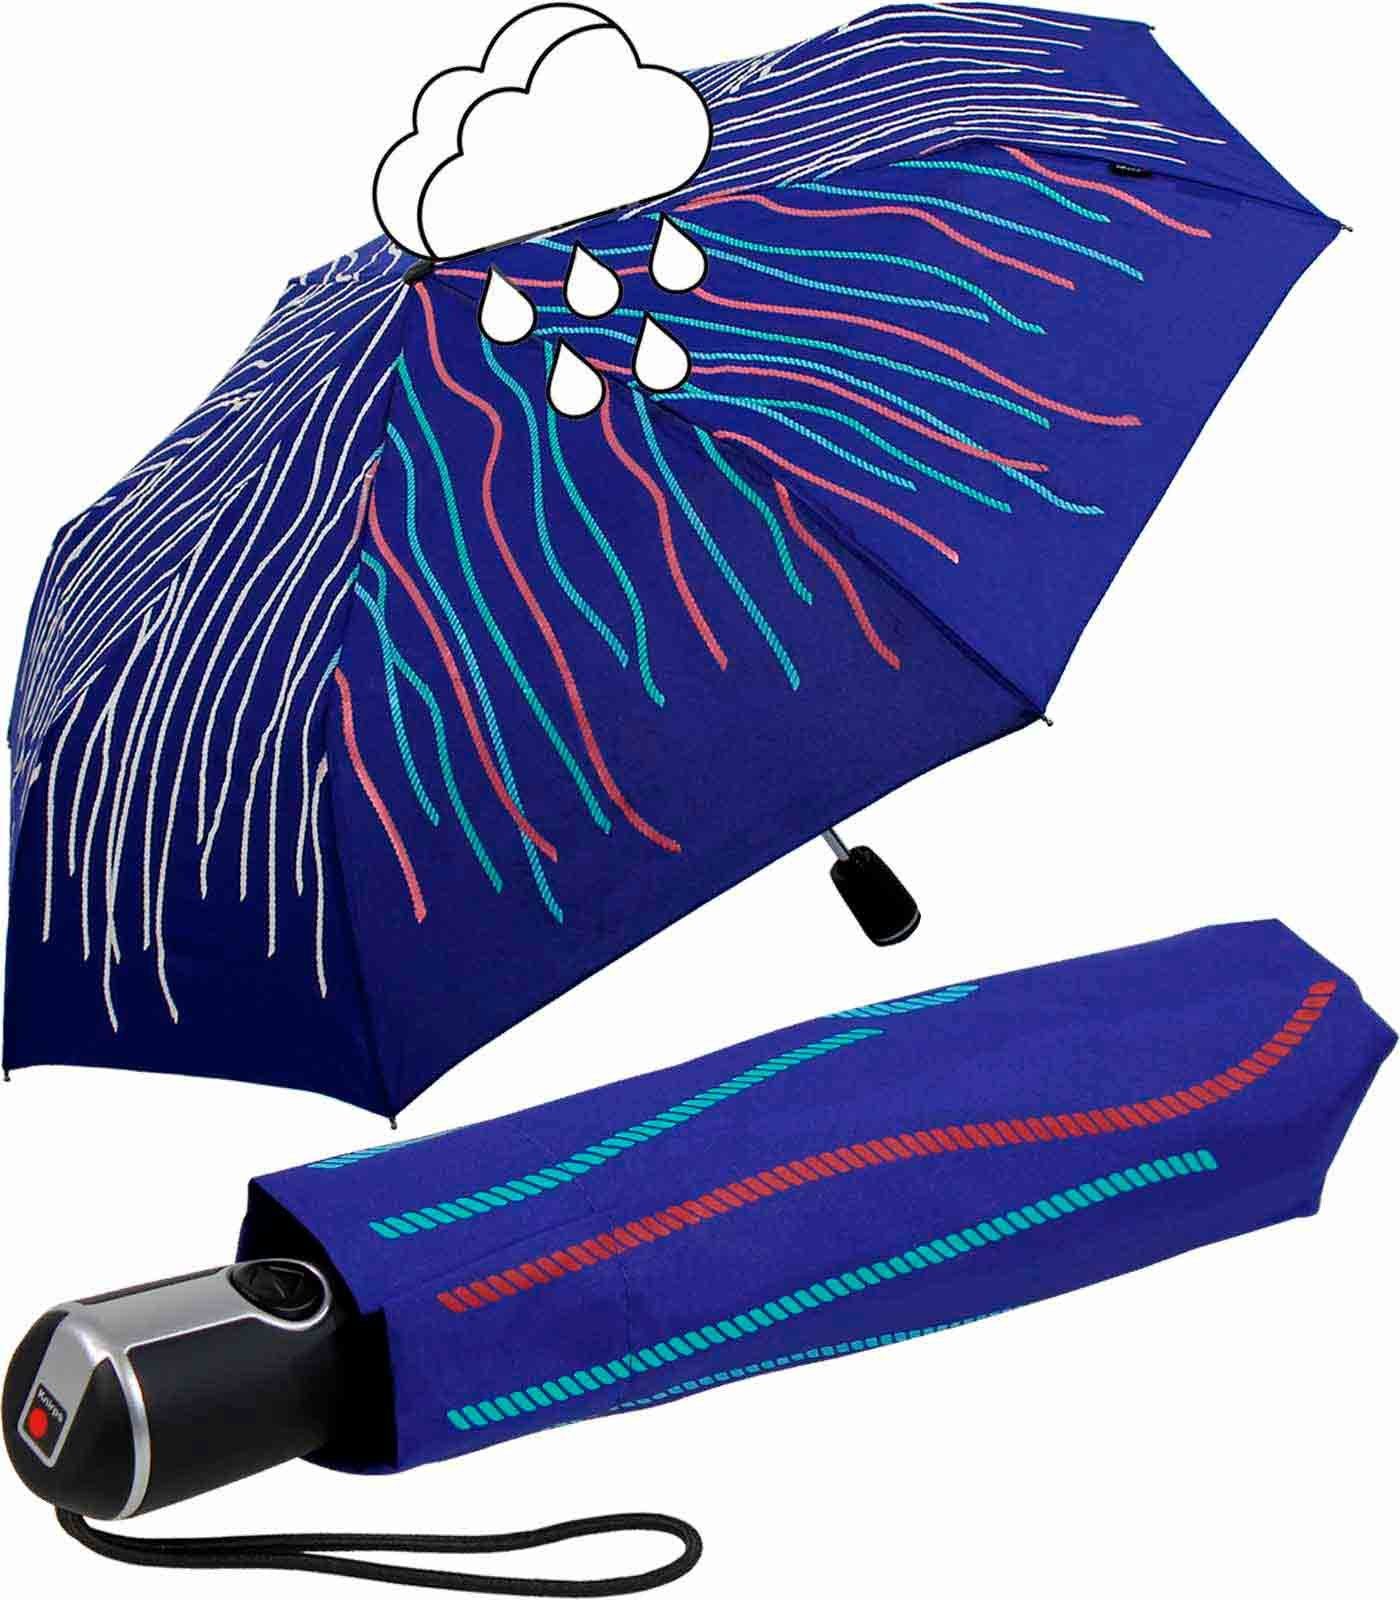 Knirps® Langregenschirm Large Duomatic mit Farbwechsel - Wet Print Rope,  bei Nässe färben sich die weißen Fäden bunt